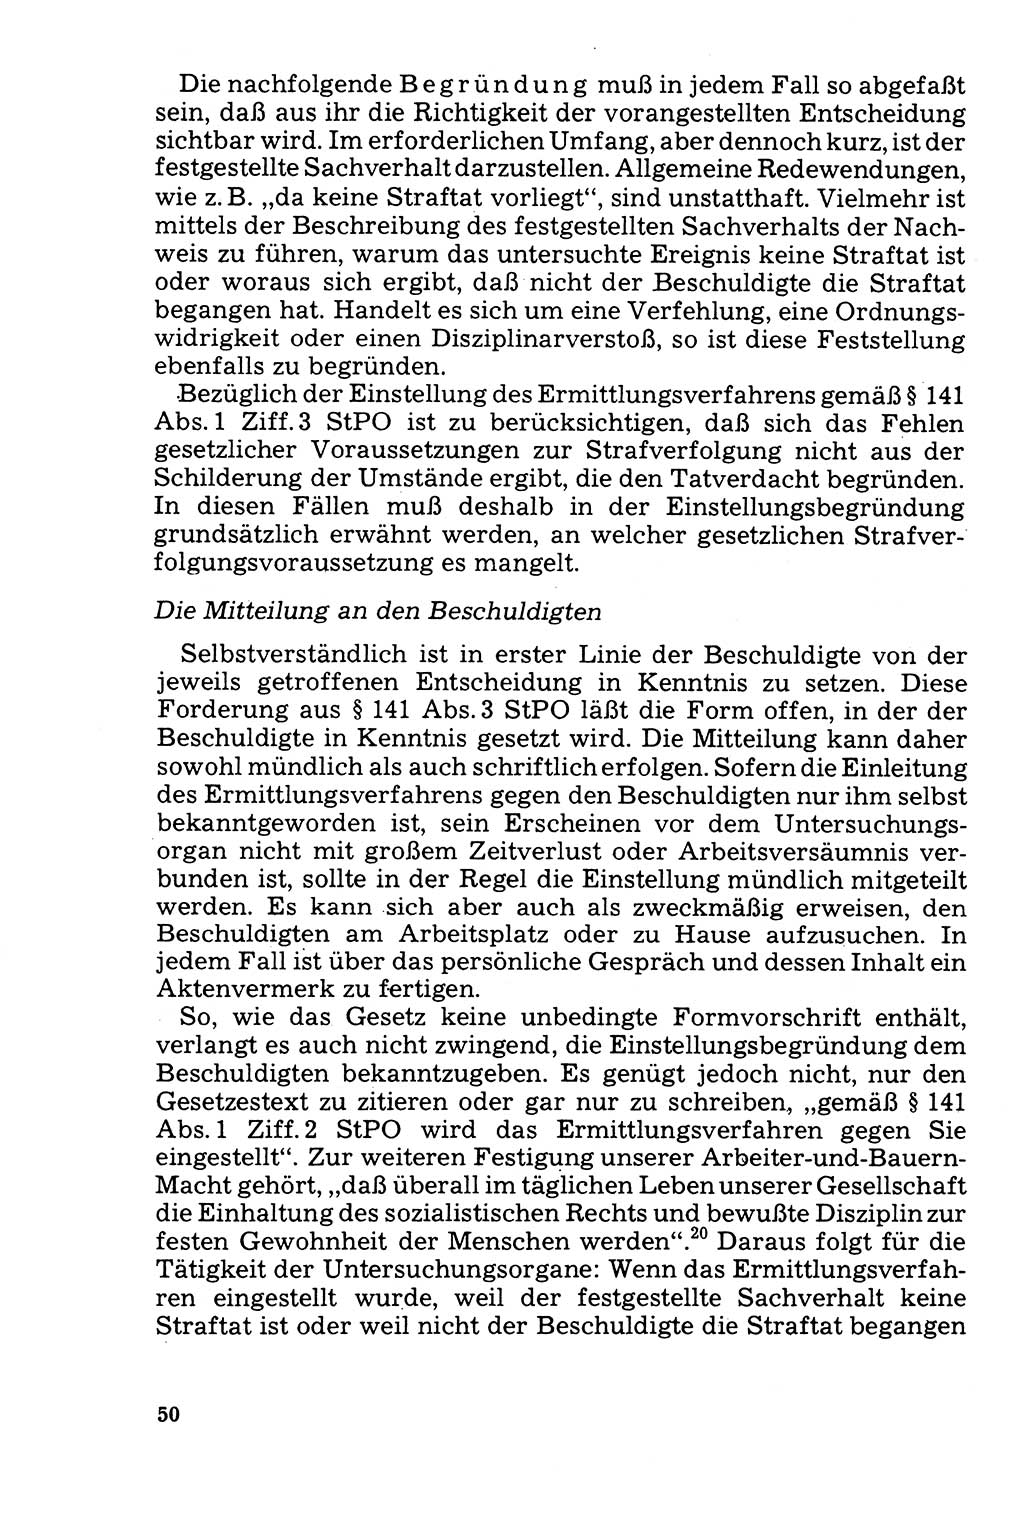 Der Abschluß des Ermittlungsverfahrens [Deutsche Demokratische Republik (DDR)] 1978, Seite 50 (Abschl. EV DDR 1978, S. 50)